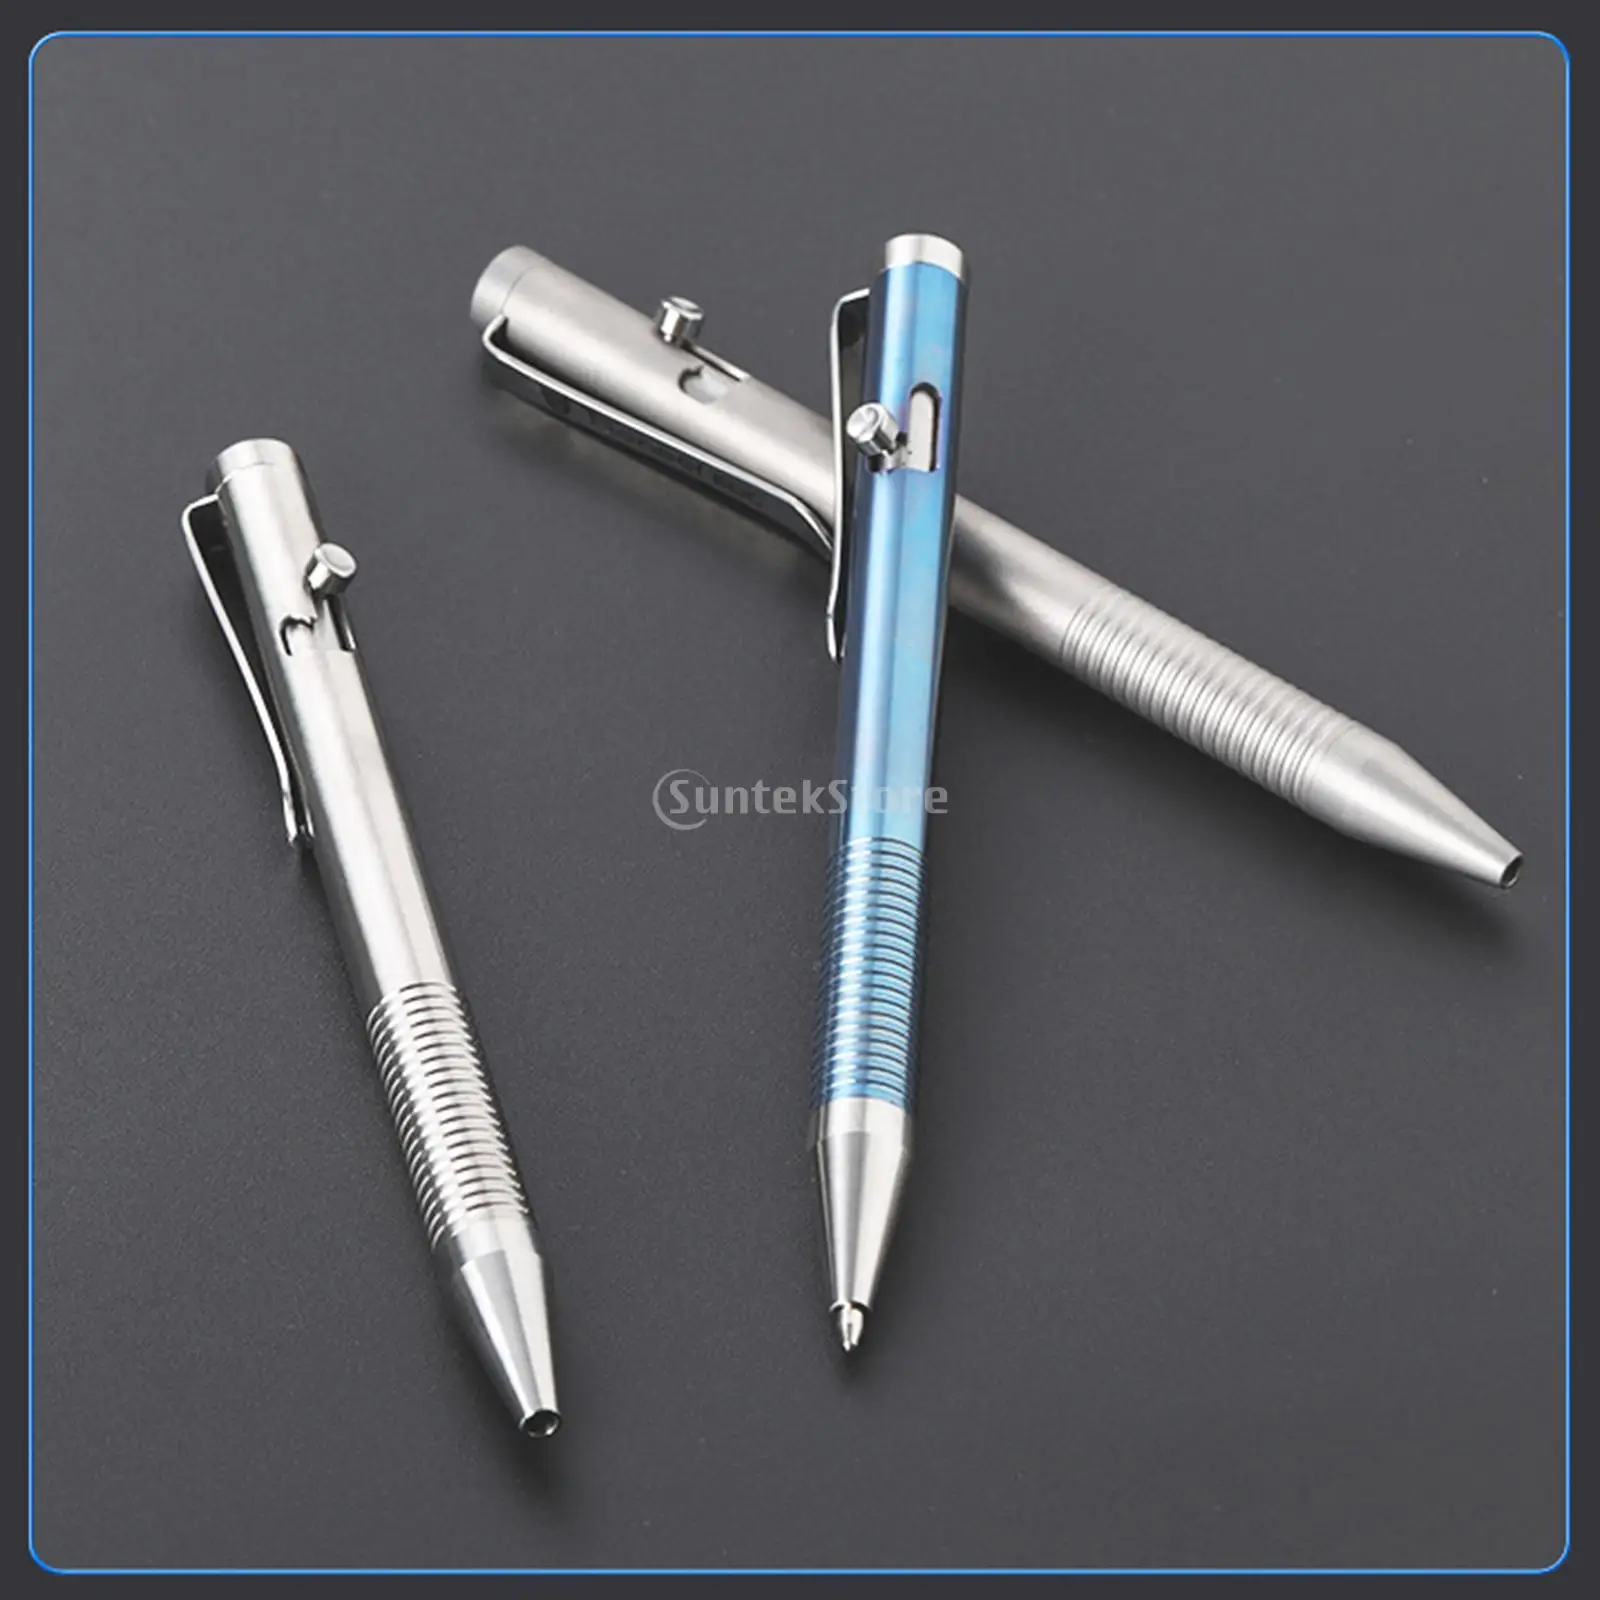 Pens Luksusowy Bolt Action Pen Titanium Stop G2 Kompatybilny z piłka kolejowego Penuble Pen Pen Pen for Office Professional Business